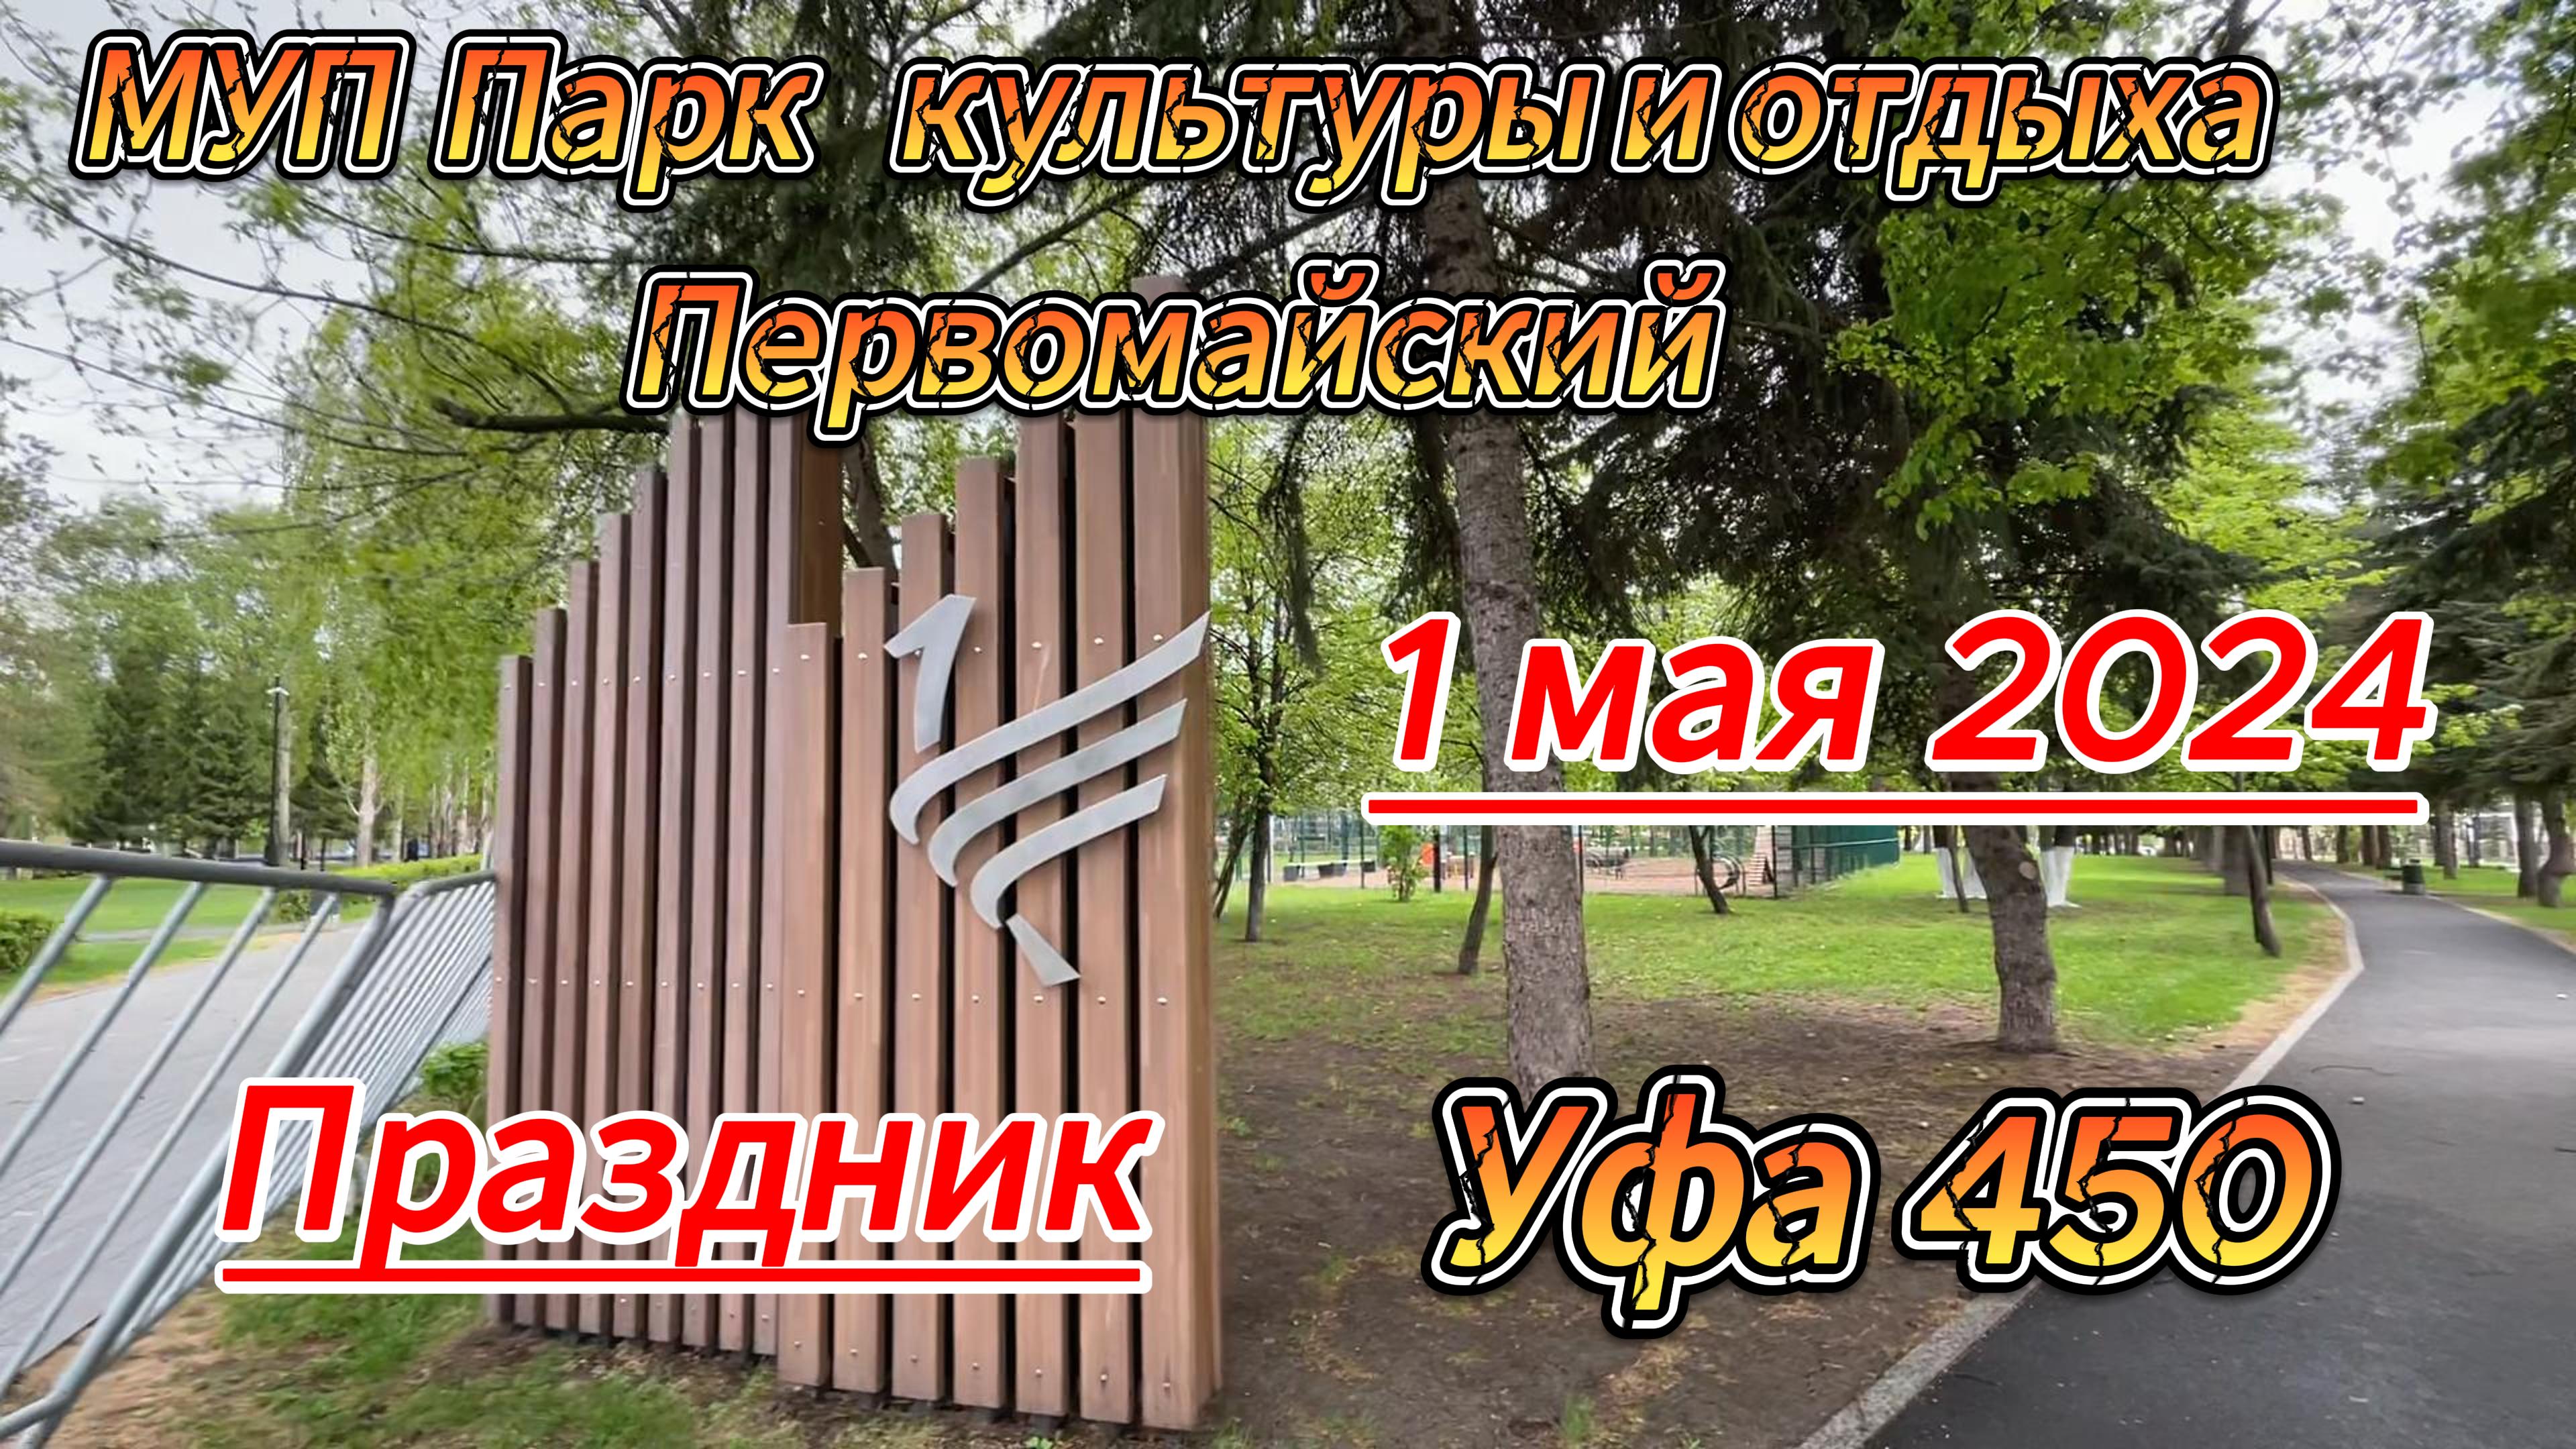 Уфа 450, парк Первомайский, прогулка 1 мая, солнце, ветер, дождь..